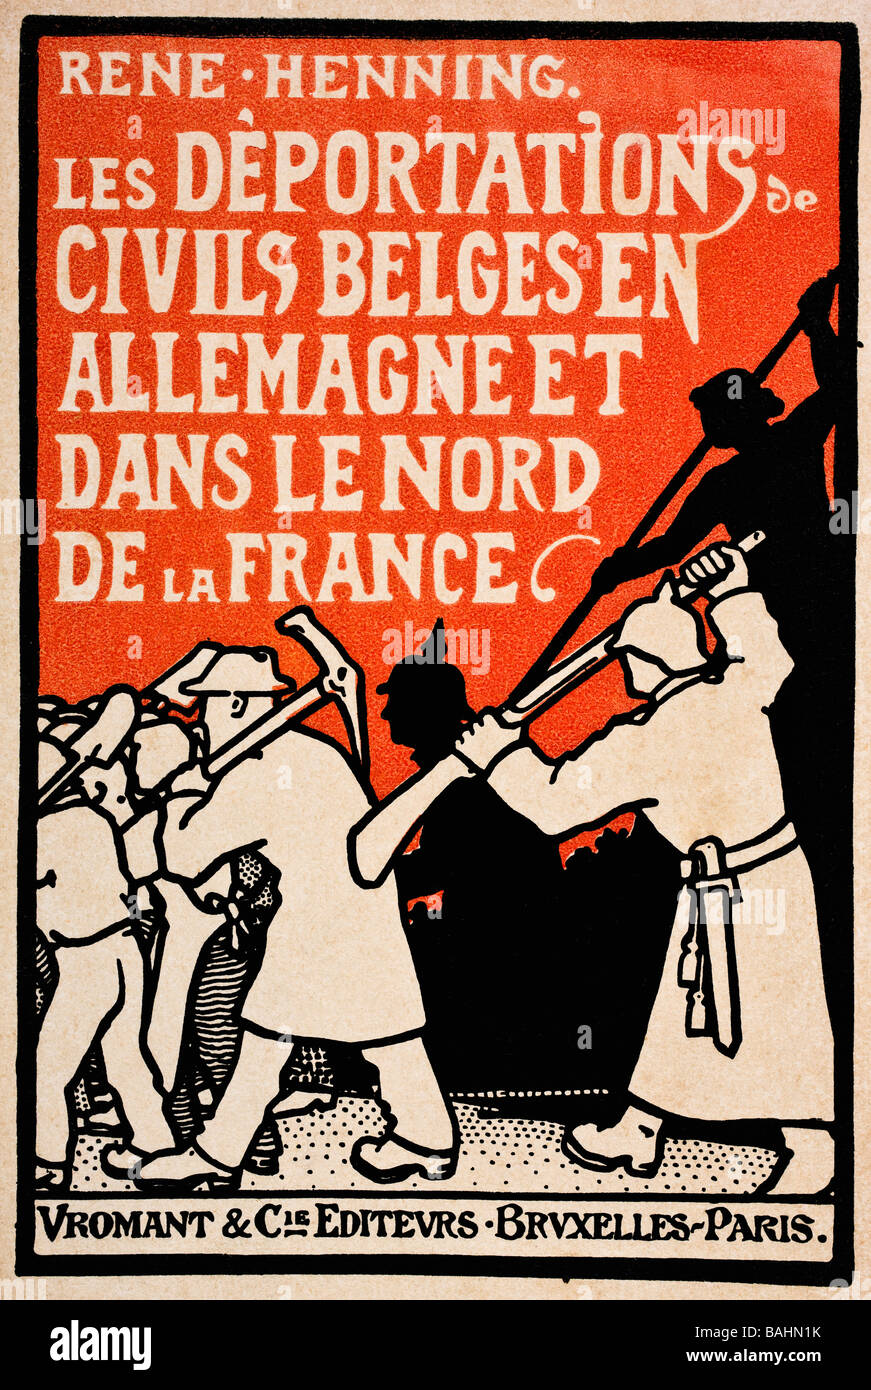 Book cover from 1919, Les Deportations de Civils Belges en Allemagne et Dans le Nord de la France by Rene Henning. Stock Photo